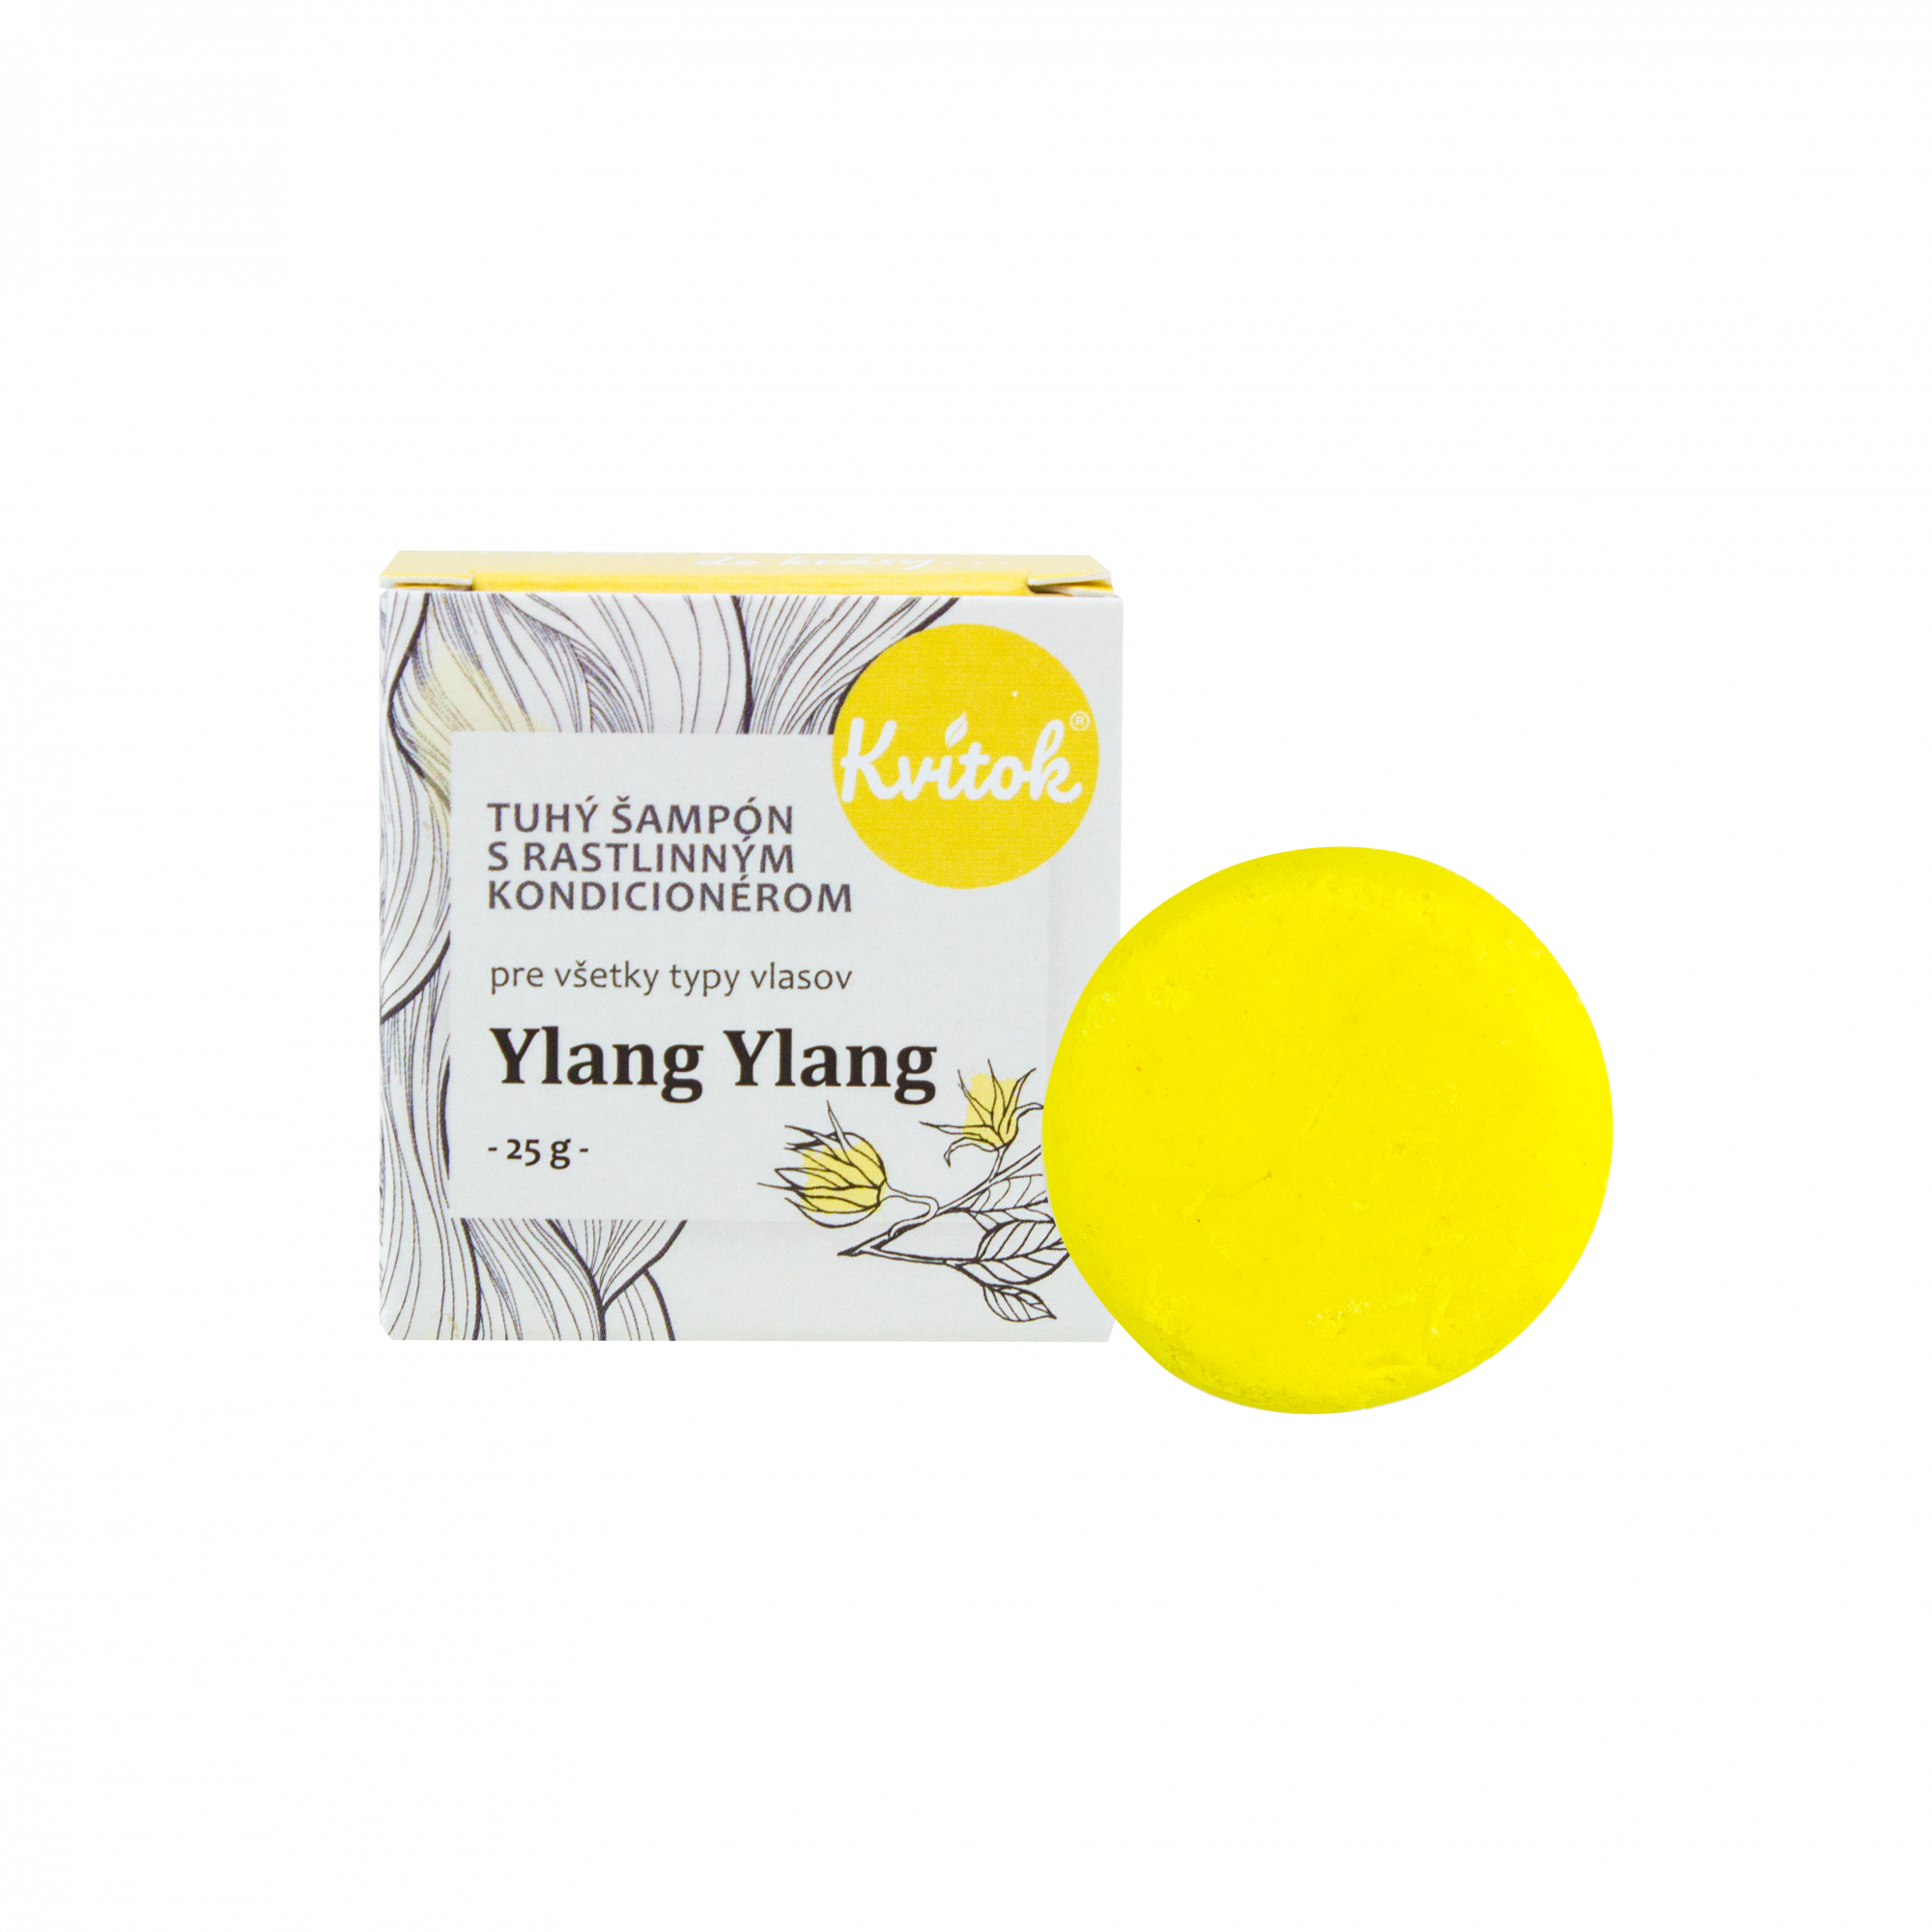 Kvitok Tuhý šampon s kondicionérem pro světlé vlasy Ylang Ylang 25 g - krásně pění Kvitok